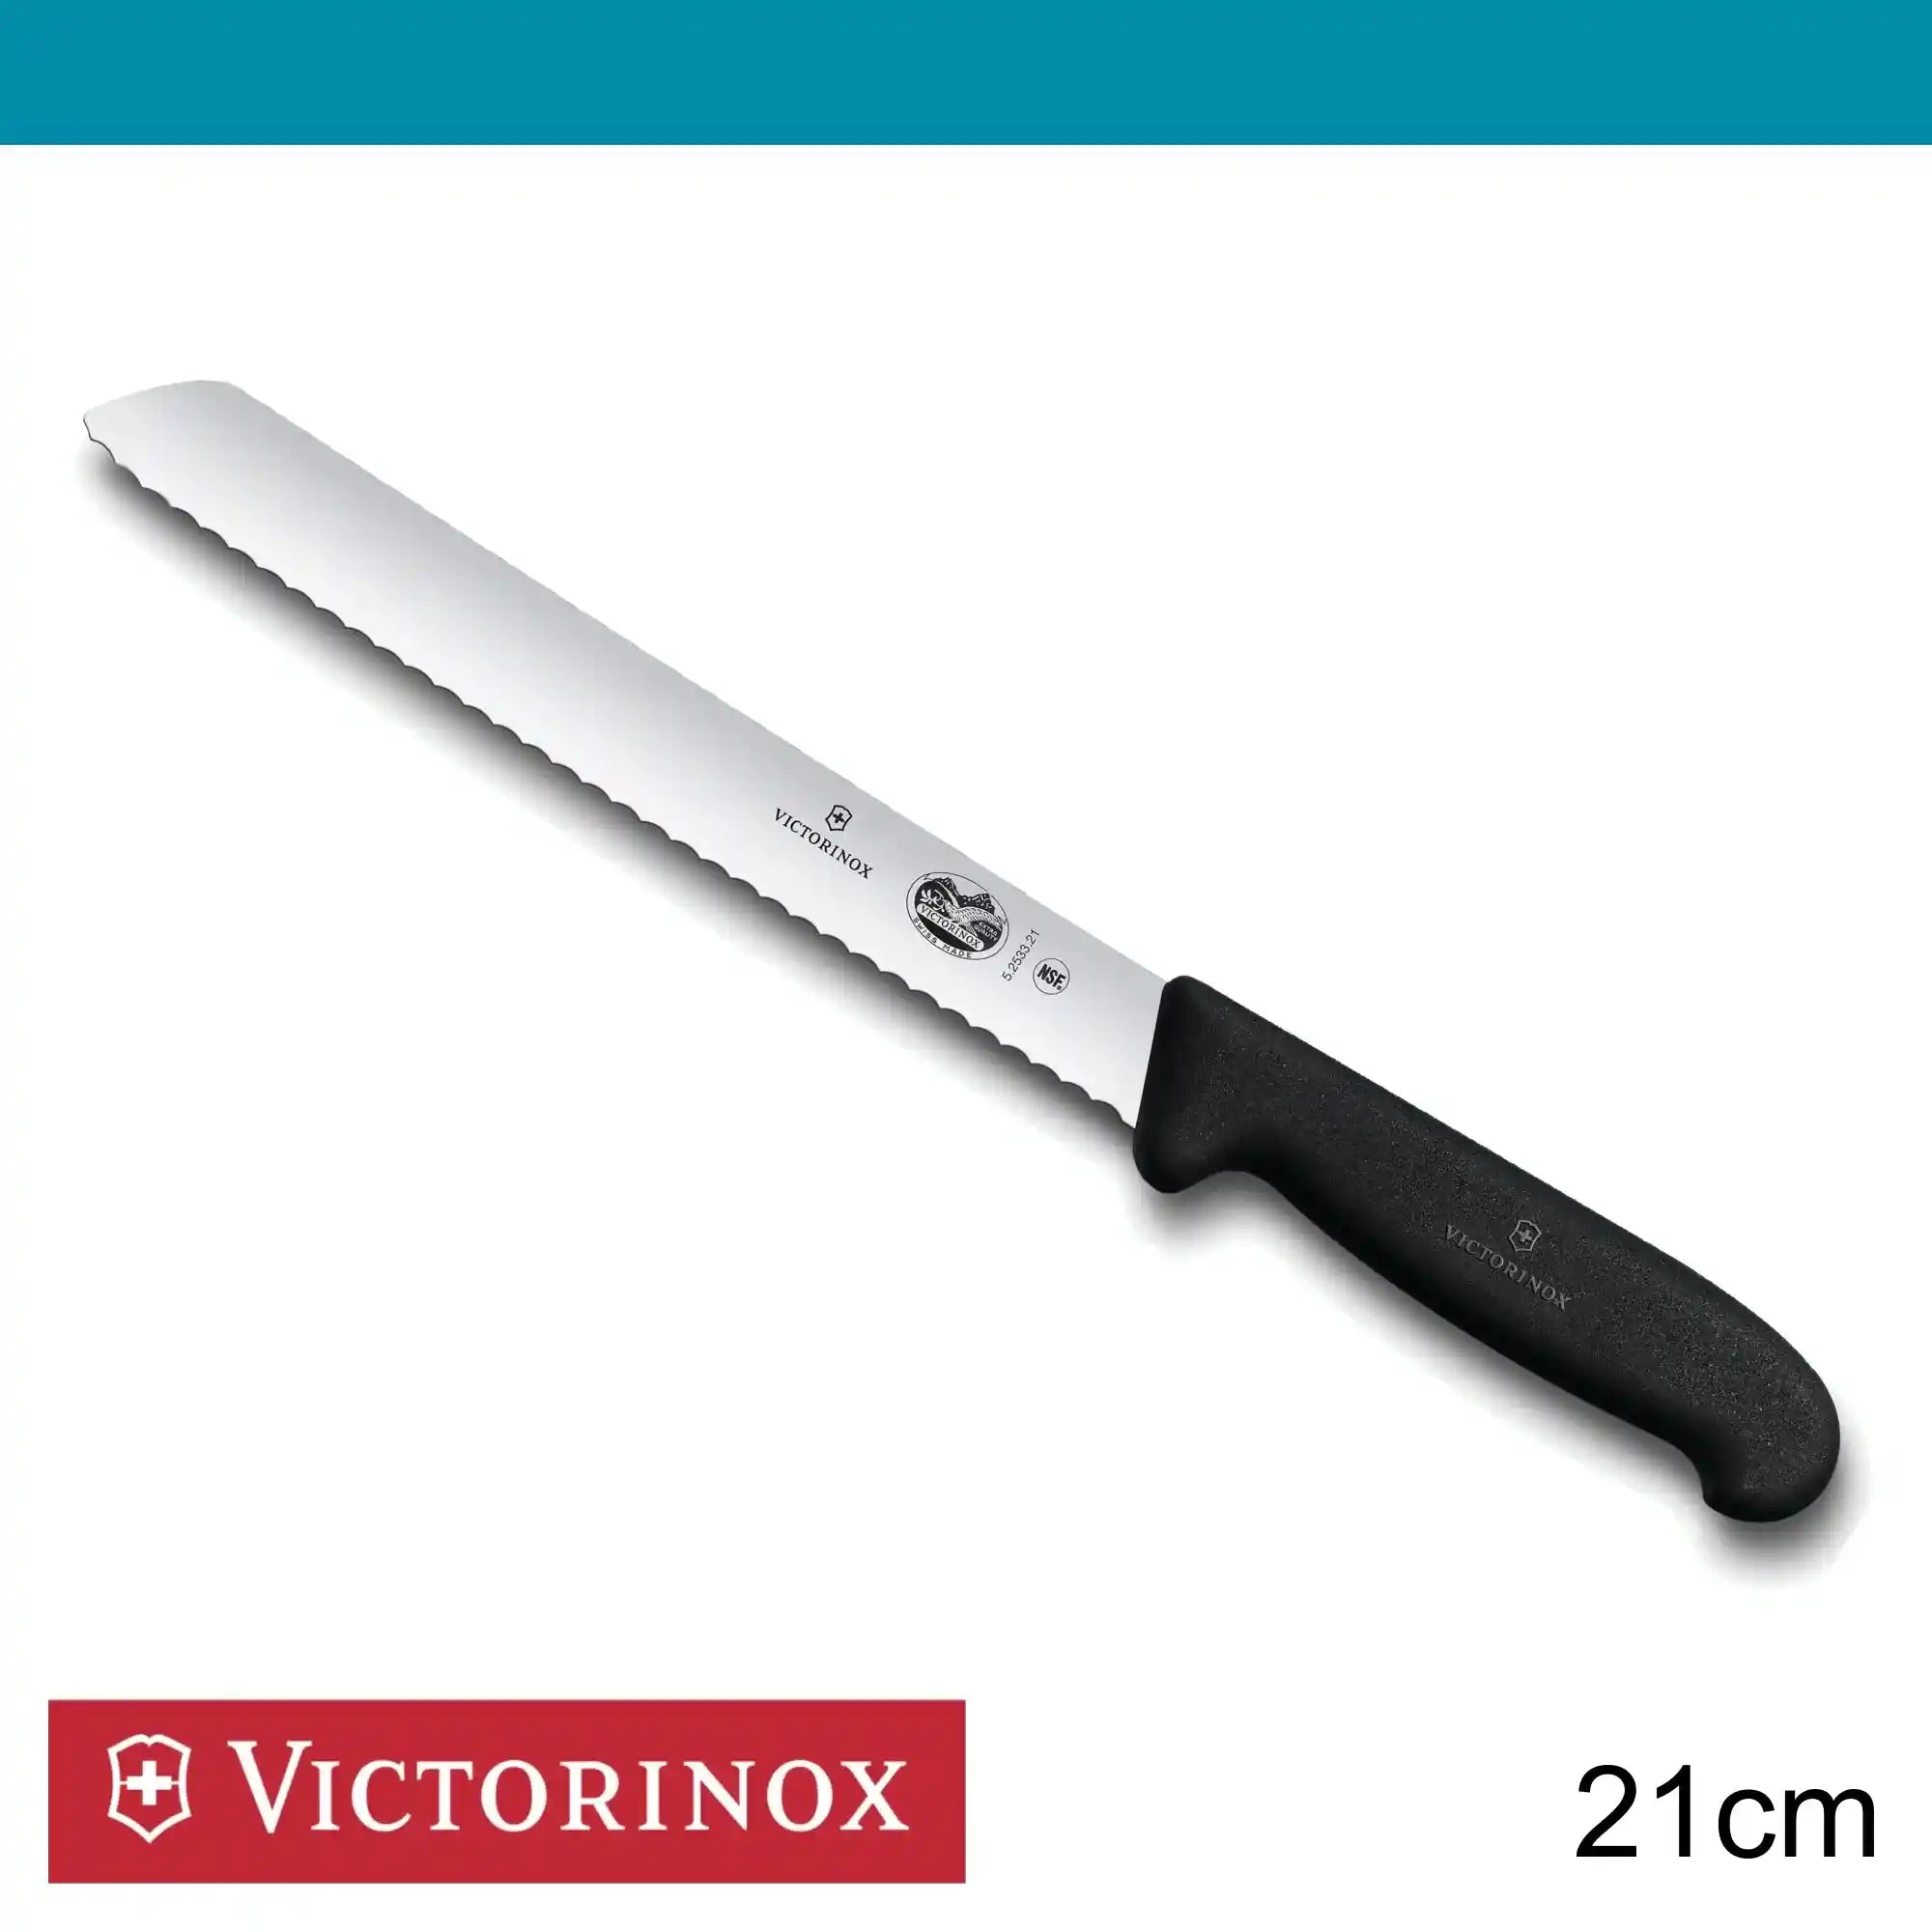 Victorinox Fibrox Bread Knife 21 cm